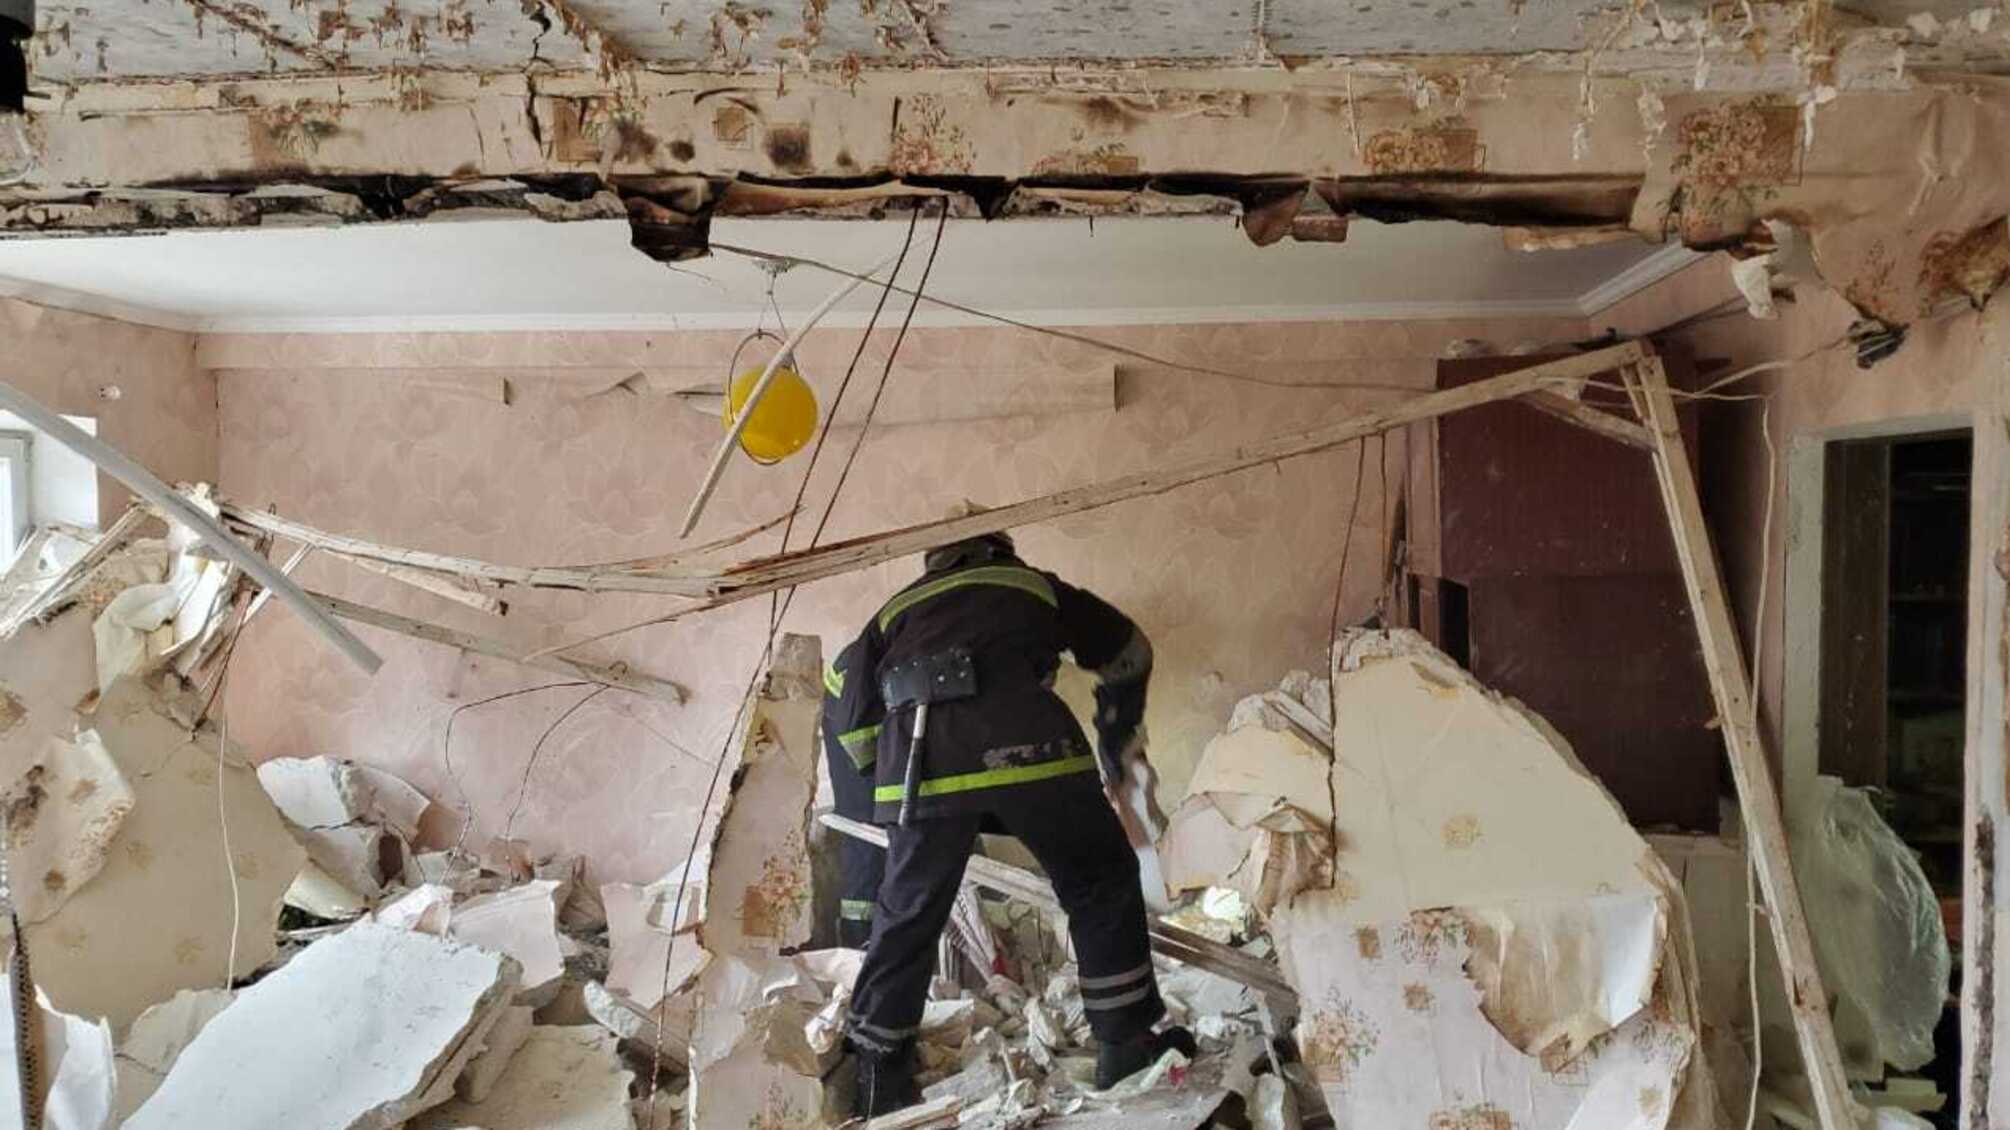 Дніпропетровська область: під час вибуху у житловій квартирі постраждало 2 особи, з них 1 дитина